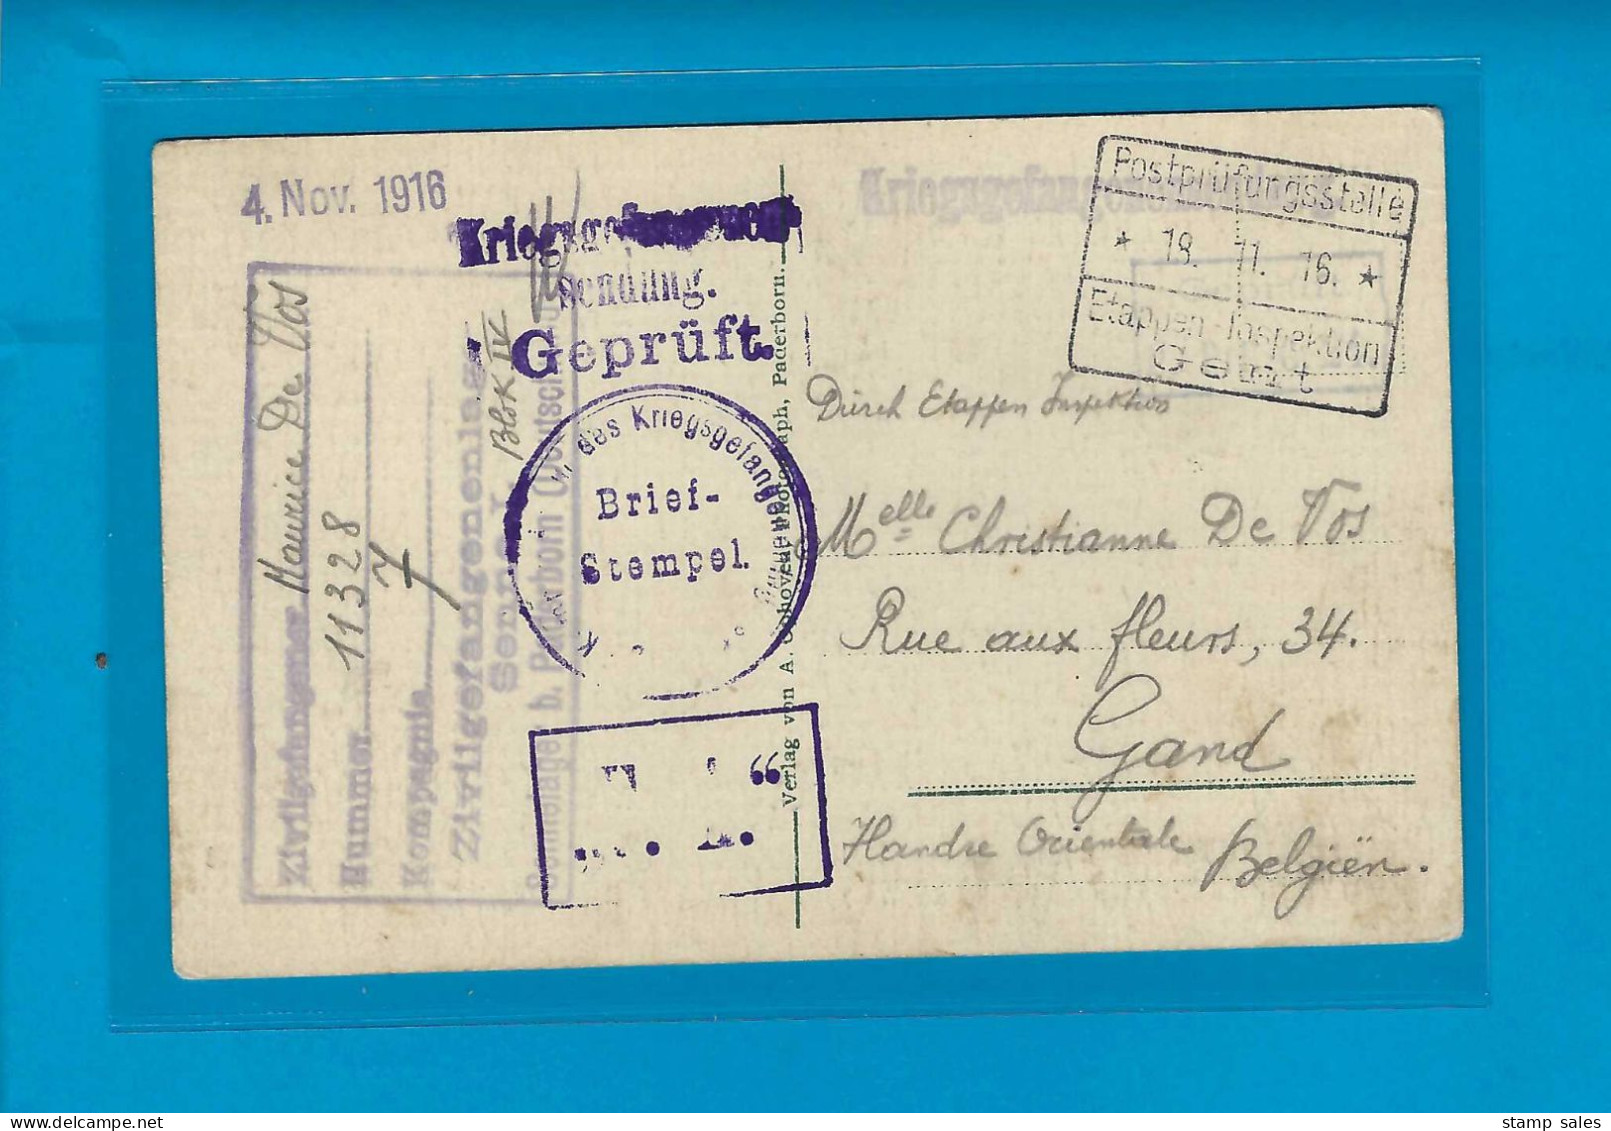 België Krijgsgevangenen Postkaart Paderborn (Duitsland) Naar Gand 04/11/1916 UNG - Kriegsgefangenschaft